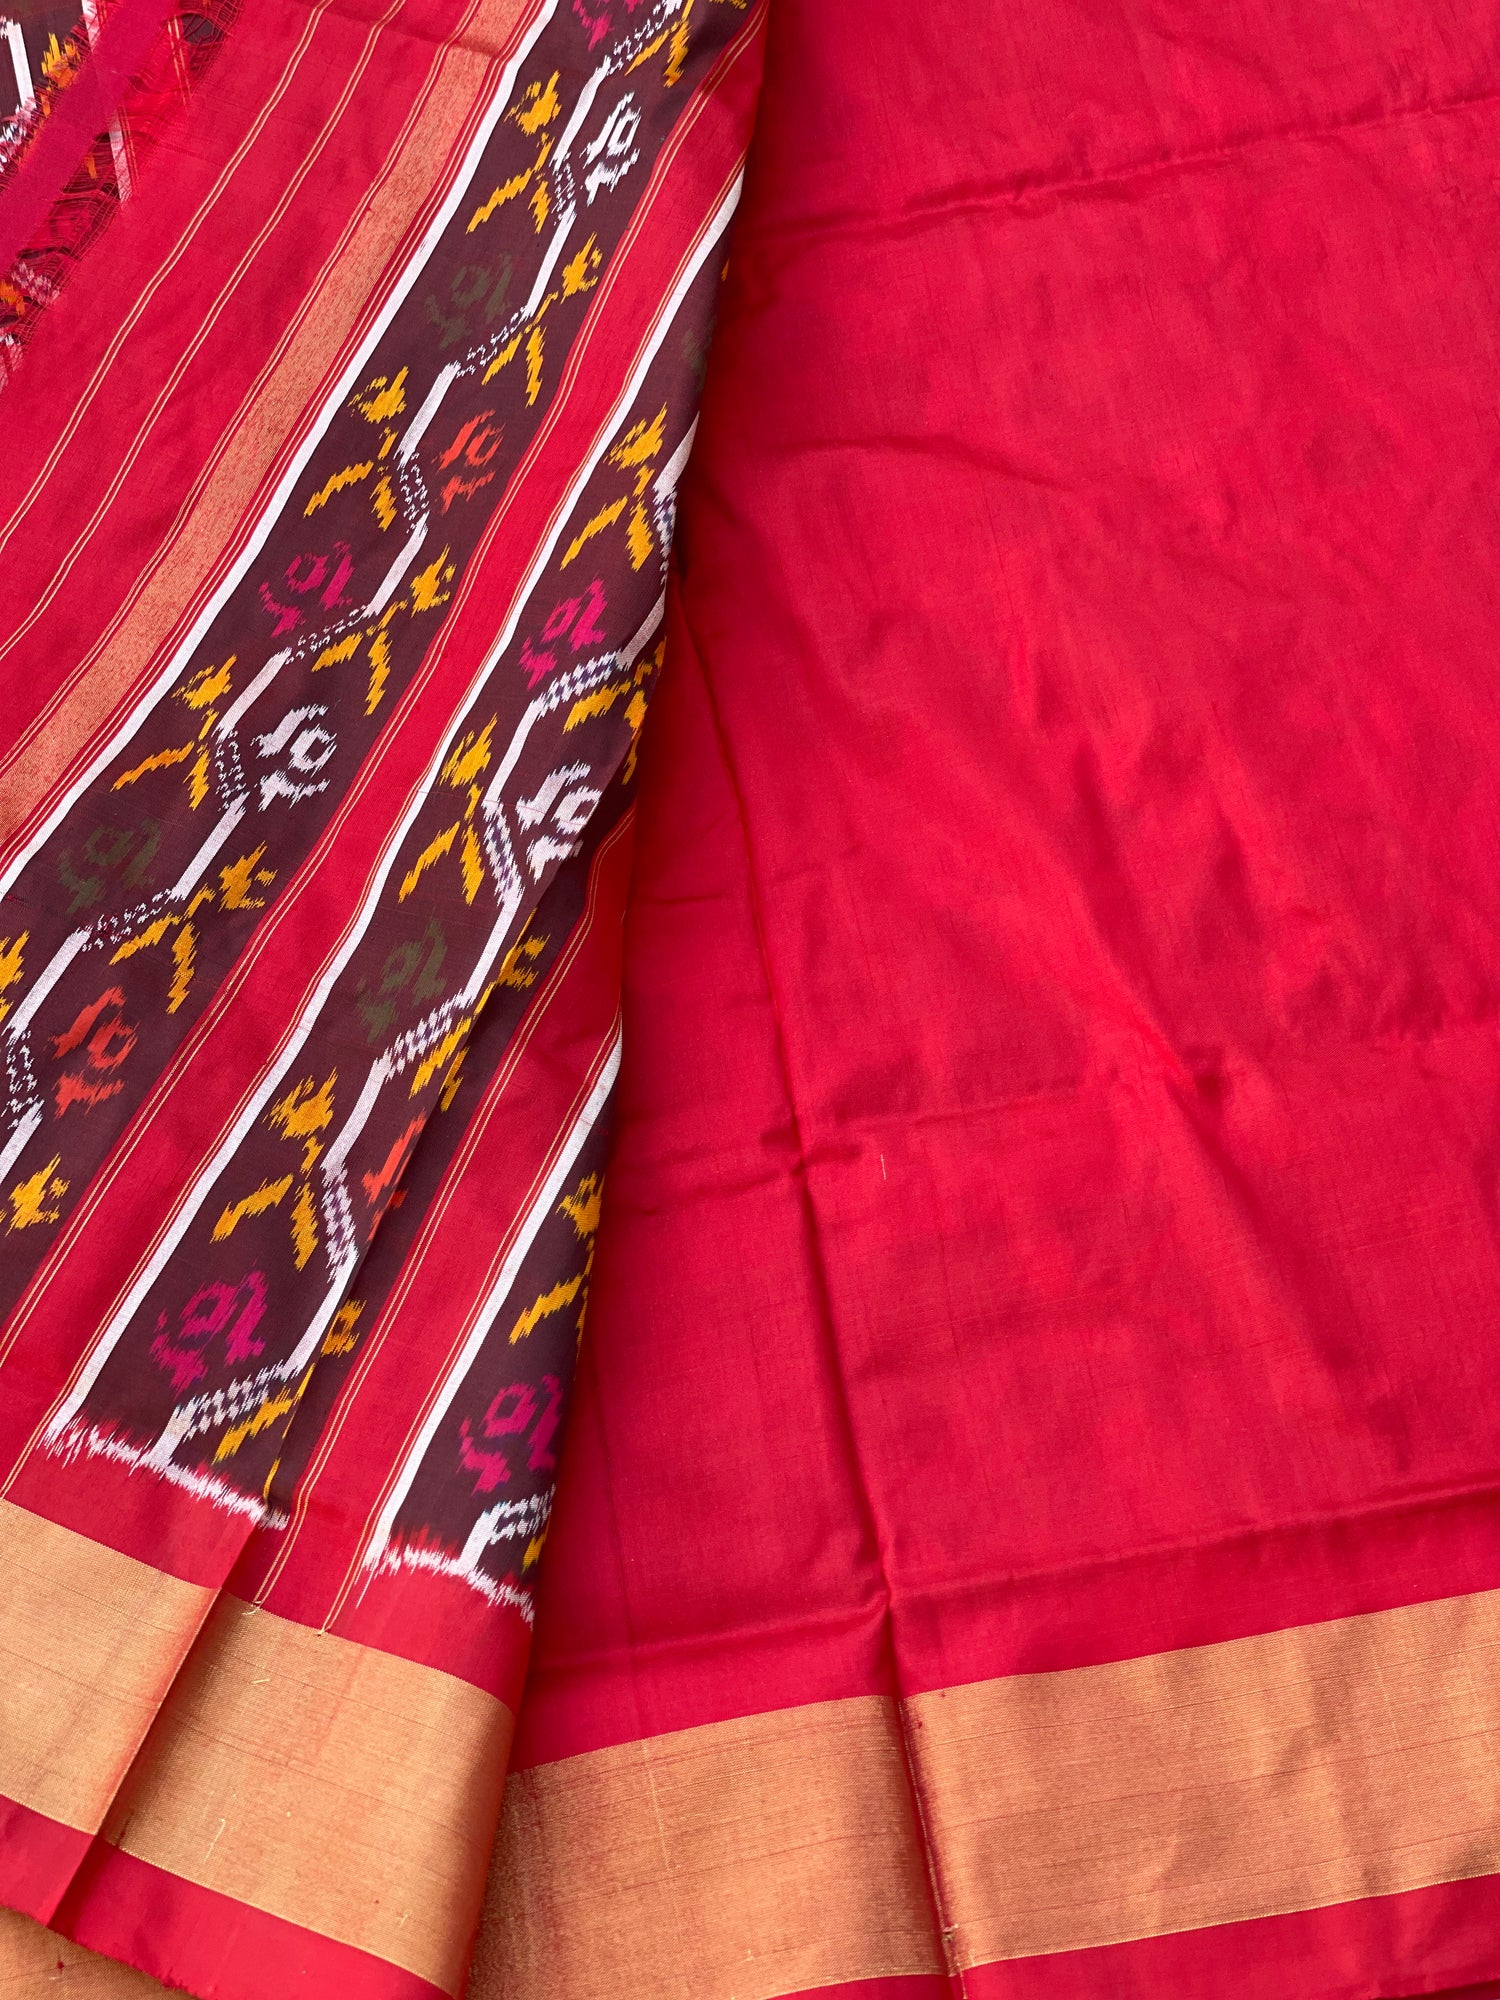 Patola Inspired silk Ikkat Saree with flower basket motifs